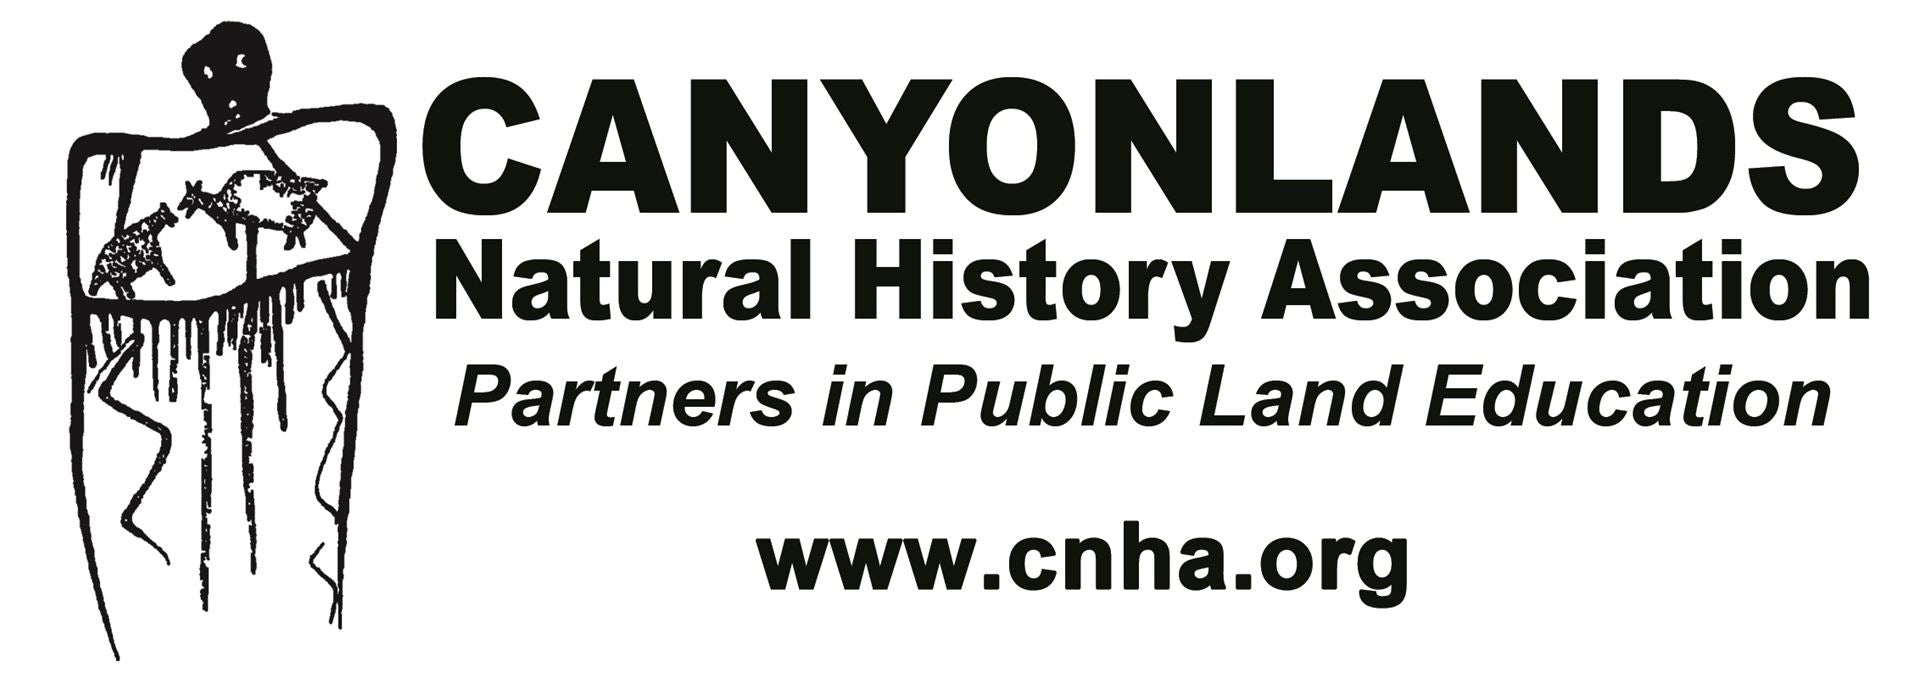 Canyonlands Natural History Association